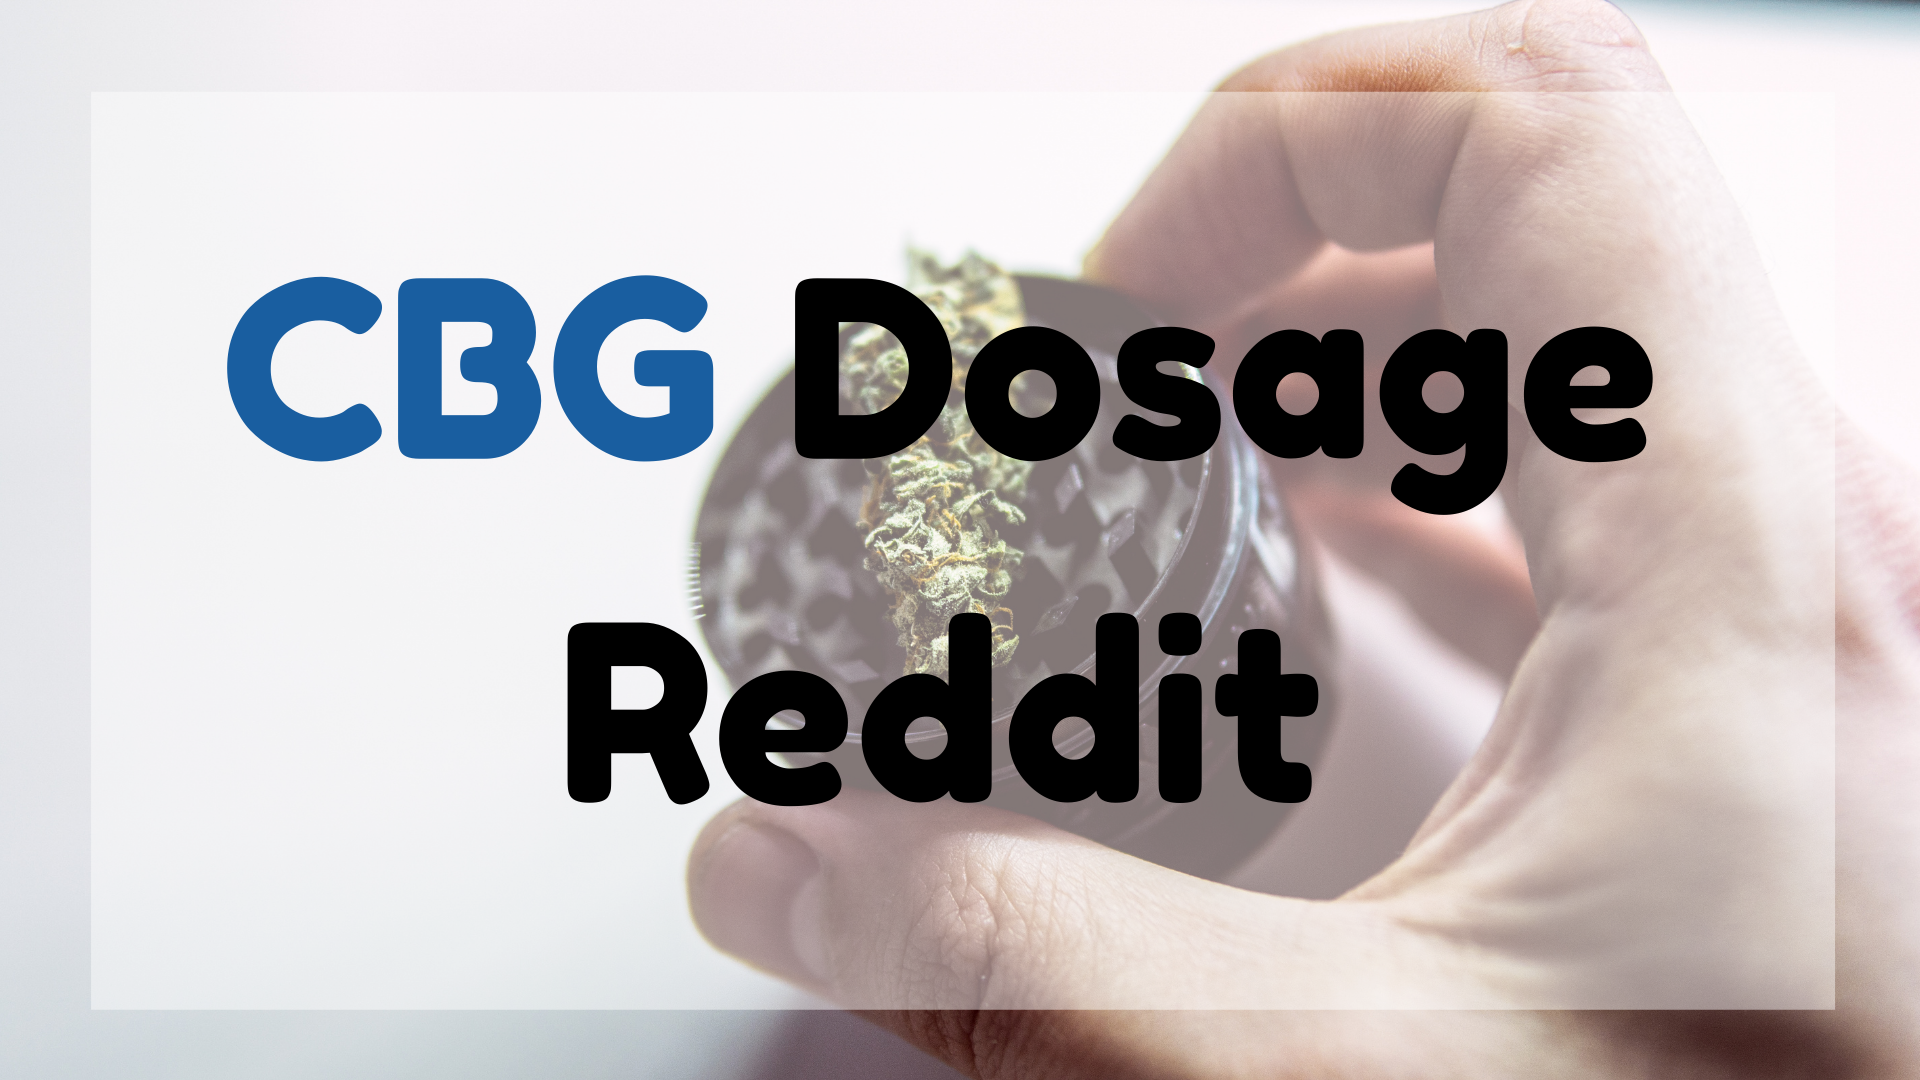 CBG Dosage Reddit